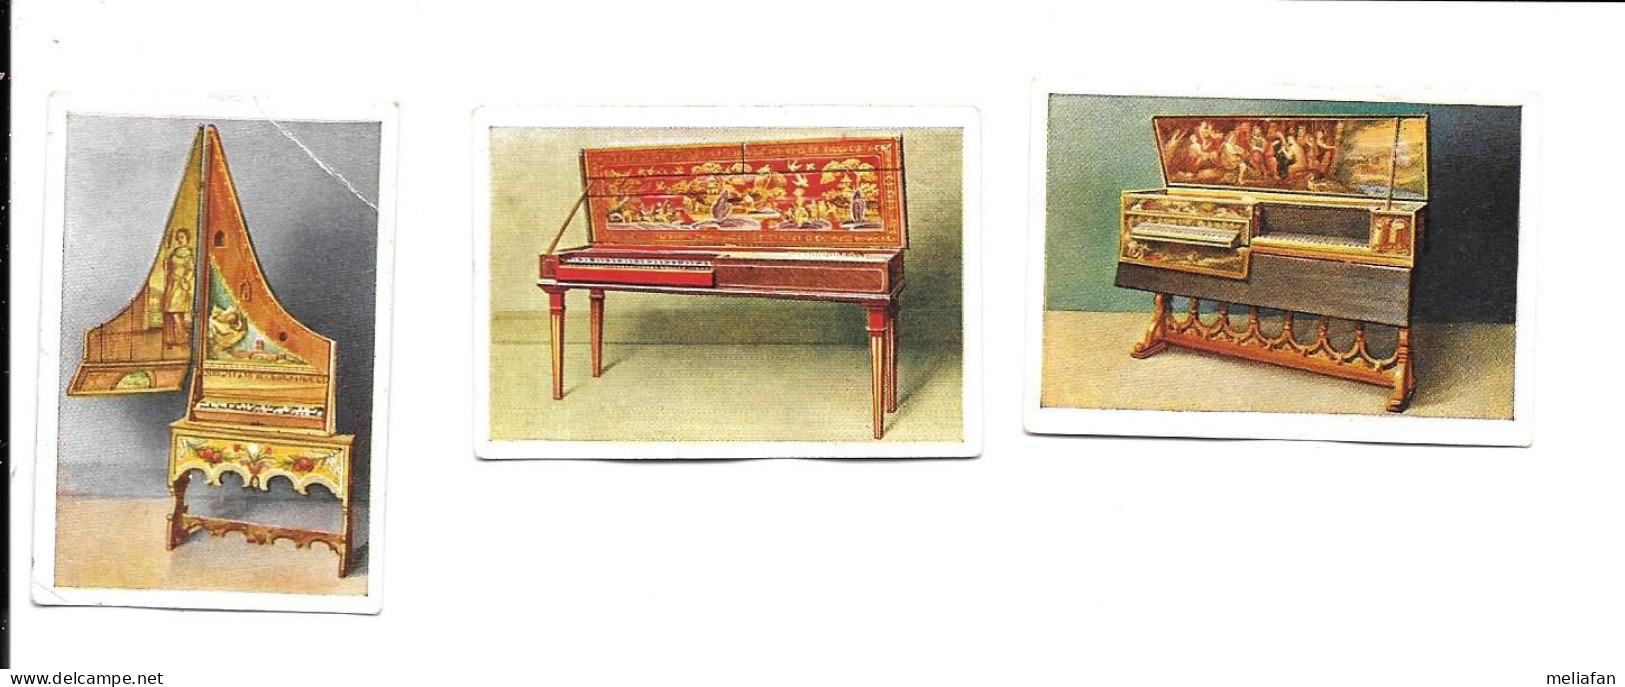 BP73 - IMAGES CIGARETTES SALEM - PRECURSEURS DES PIANOS - CLAVECIN - VIRGINAL - Zigarettenmarken